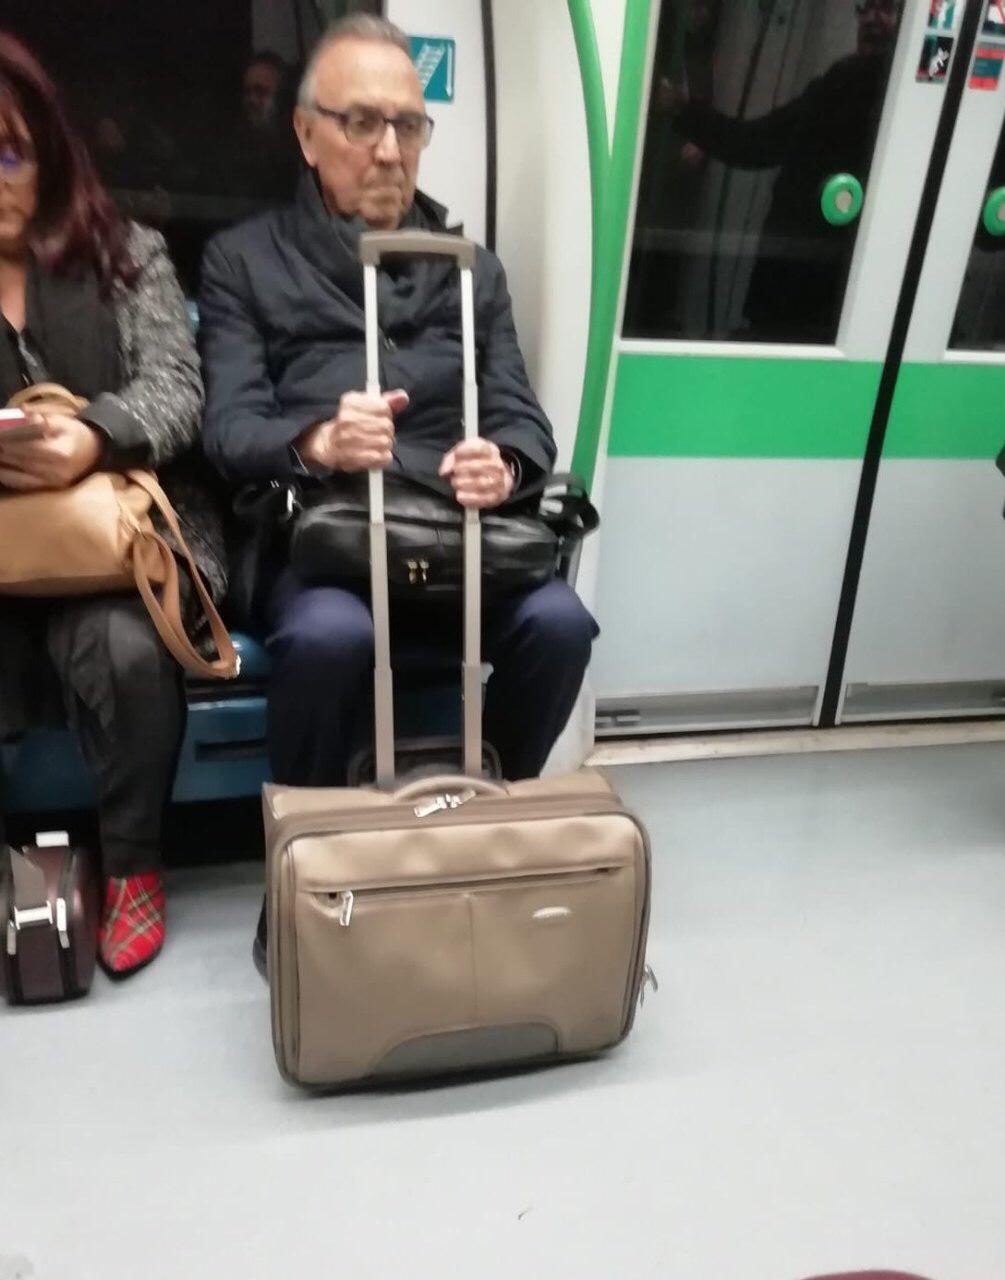 Gaspart sobreviu al seu primer viatge en metro